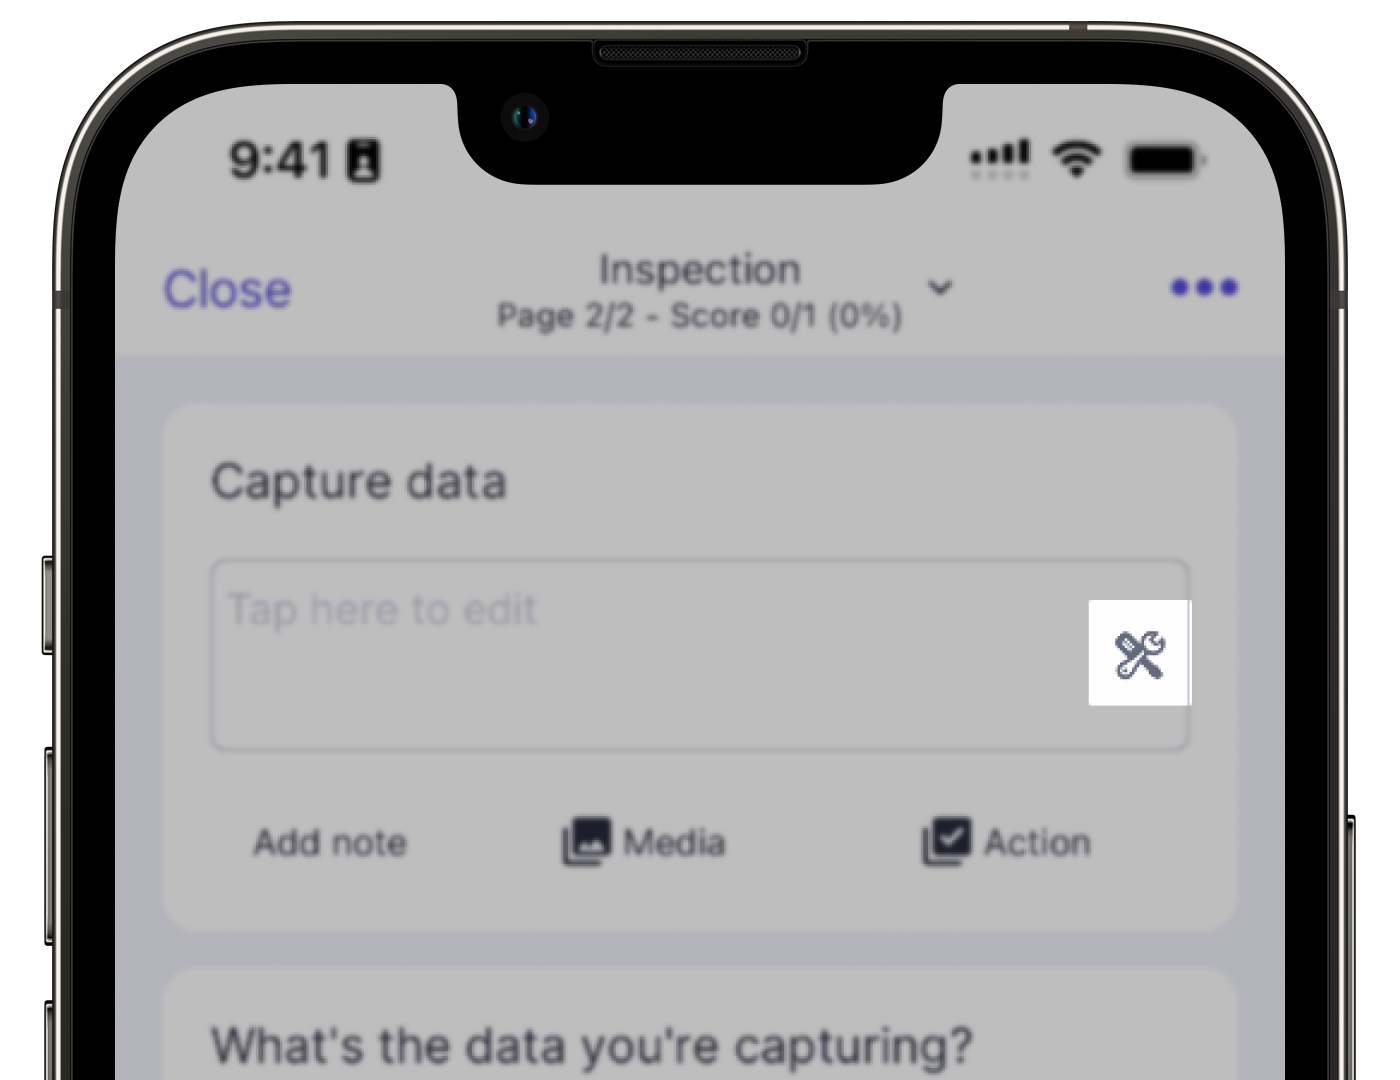 Ver las opciones de captura de datos disponibles en las inspecciones en la aplicación móvil.